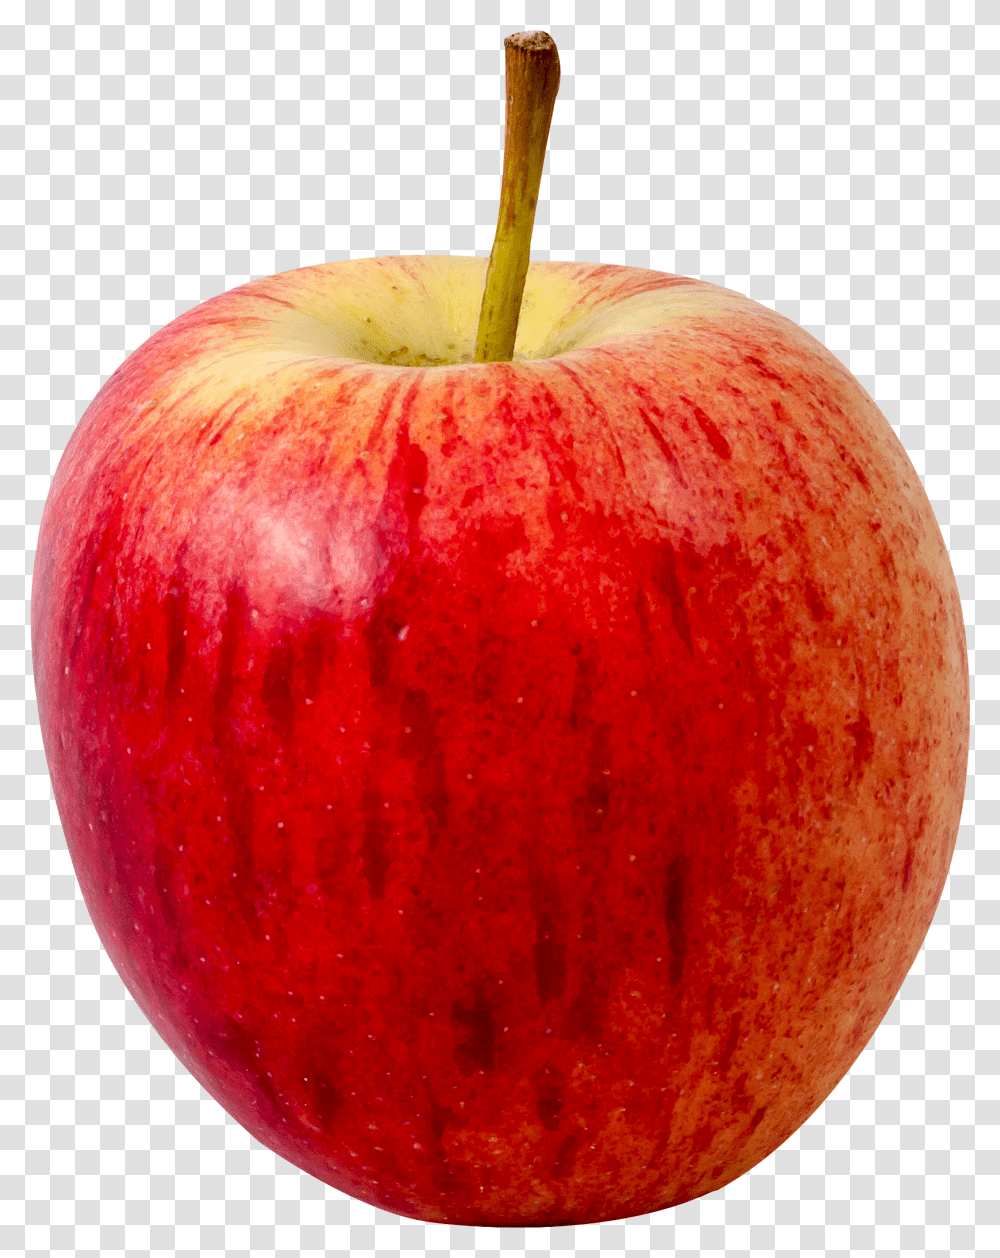 Red Apple Fruit Background, Plant, Food, Vegetable,  Transparent Png